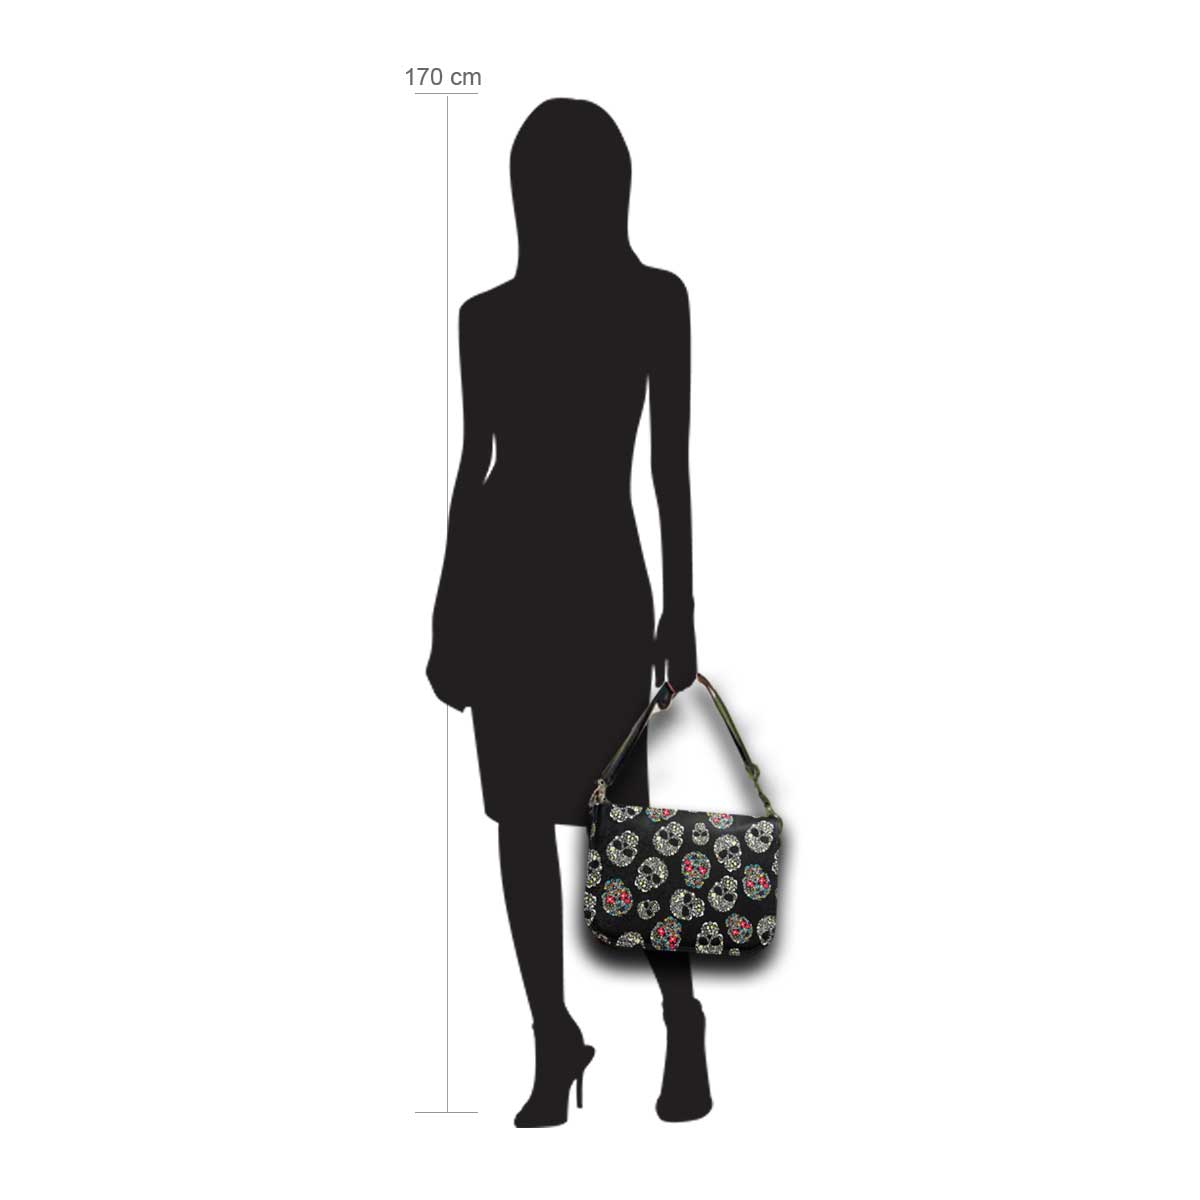 Modellpuppe 170 cm groß zeigt die Handtaschengröße an der Person Modell:Mexiko